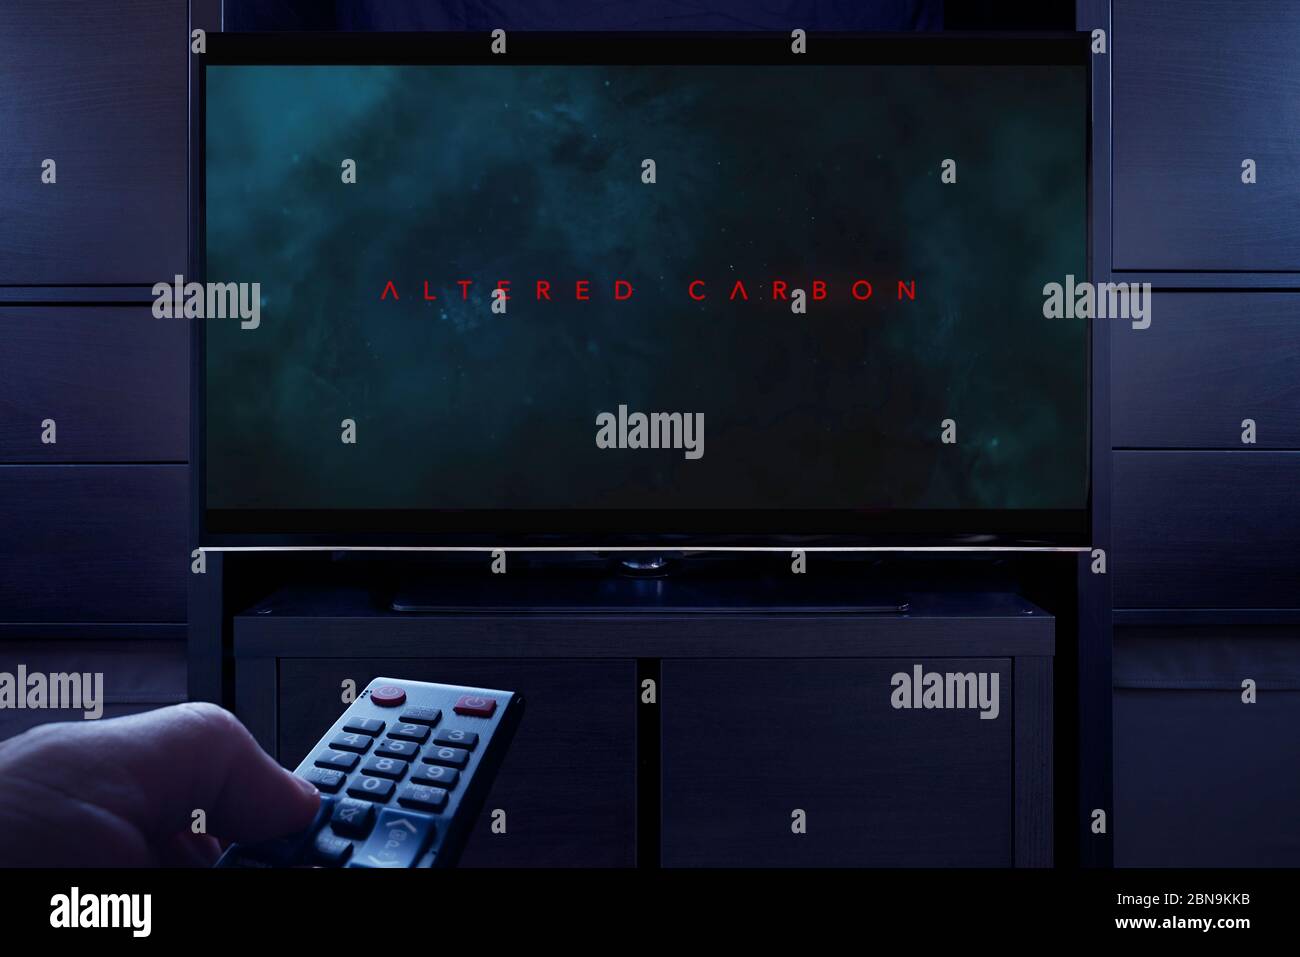 Un homme pointe une télécommande vers le téléviseur qui affiche l'écran principal de titre Altered Carbon (utilisation éditoriale uniquement). Banque D'Images